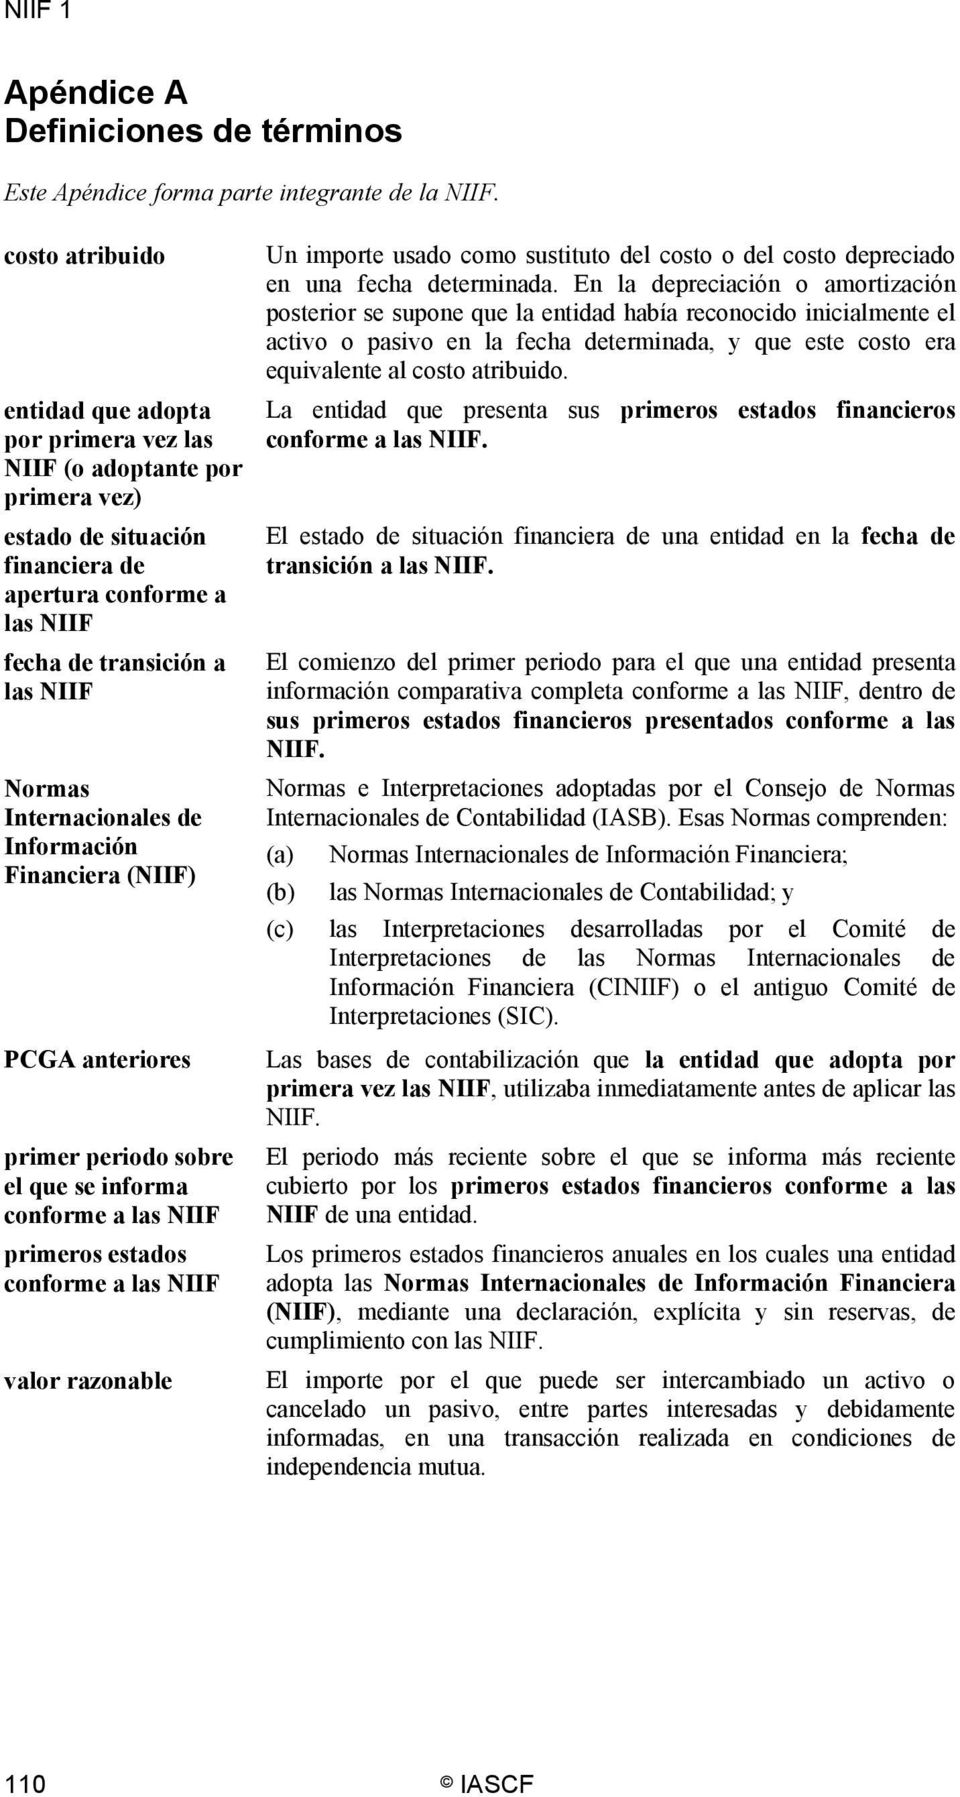 Internacionales de Información Financiera (NIIF) PCGA anteriores primer periodo sobre el que se informa conforme a las NIIF primeros estados conforme a las NIIF valor razonable Un importe usado como